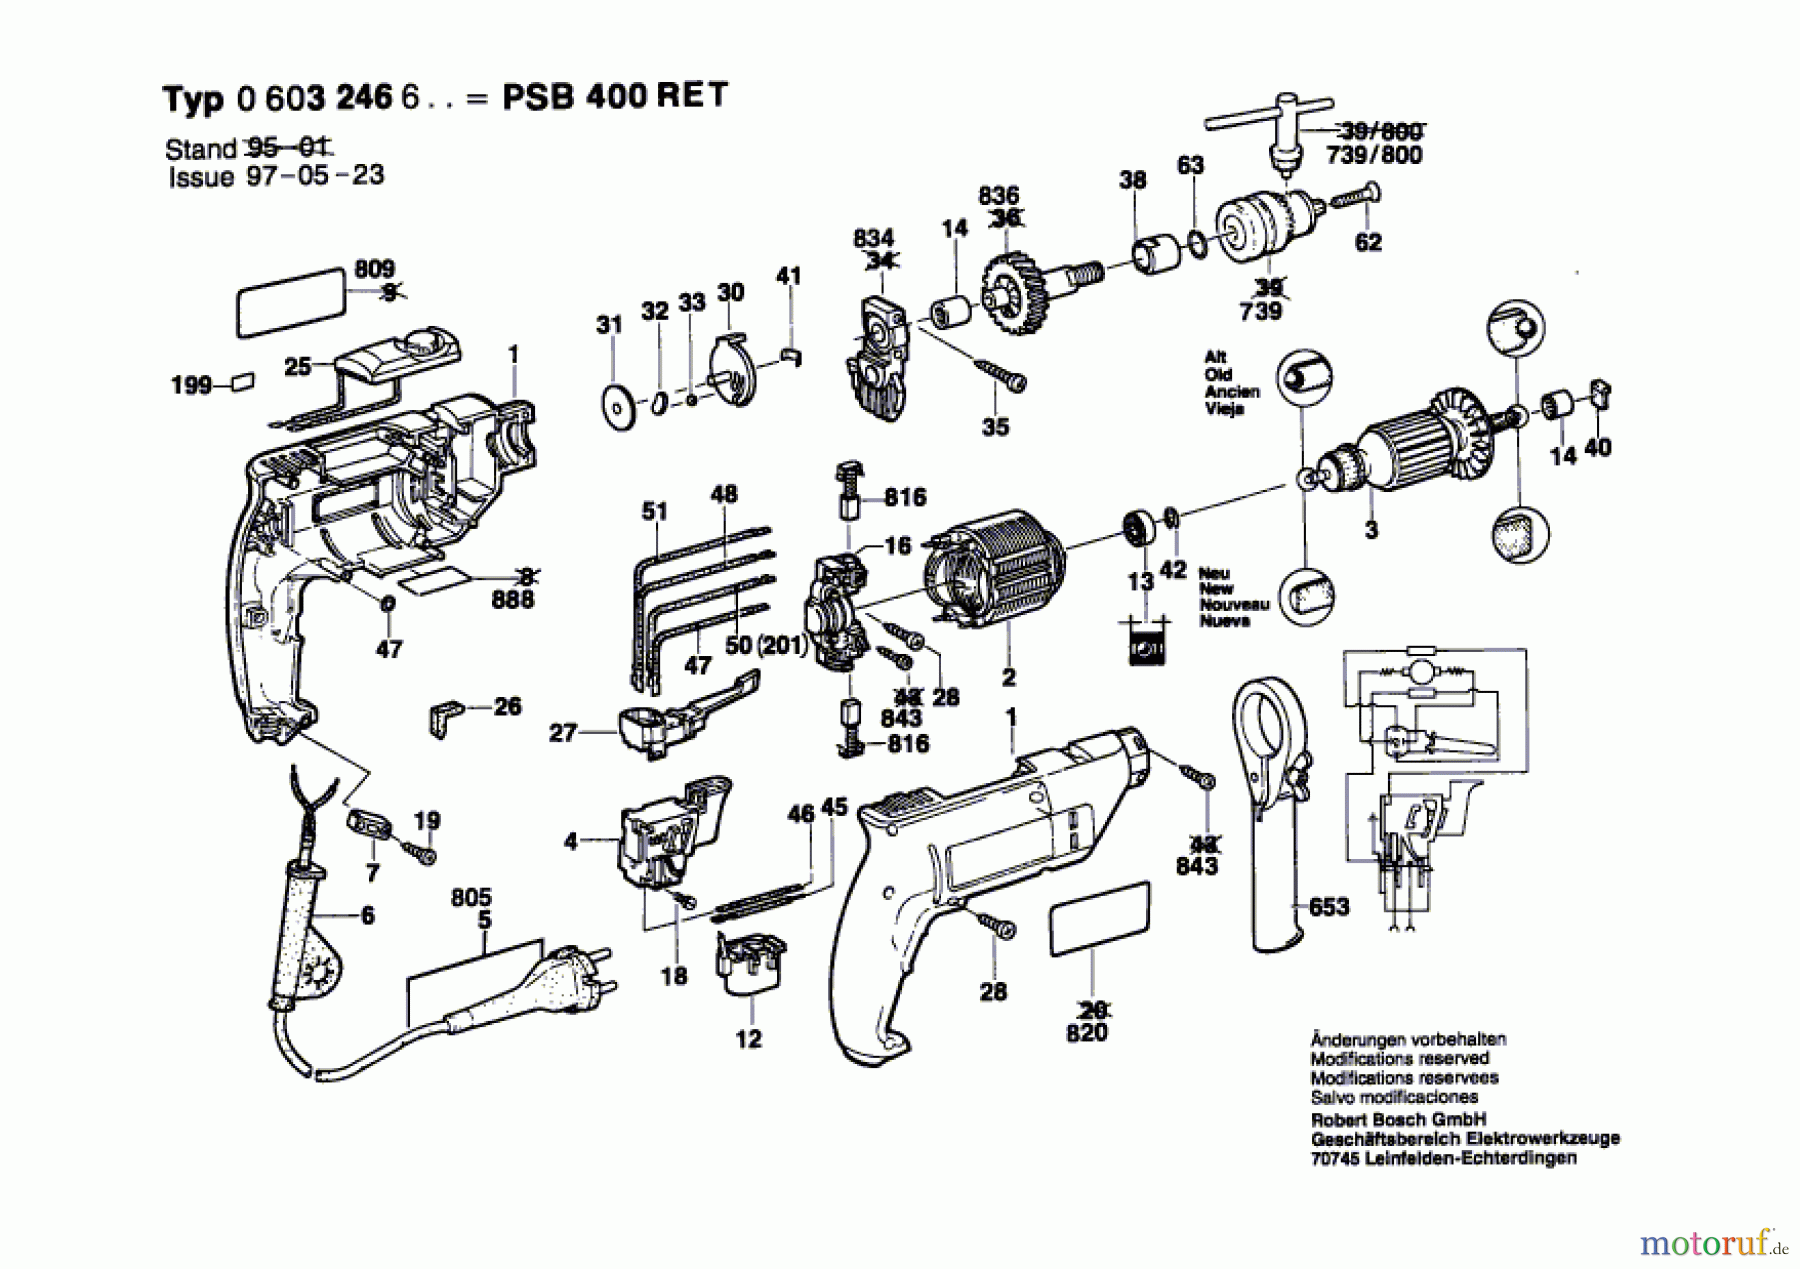  Bosch Werkzeug Schlagbohrmaschine PSB 400 RET Seite 1